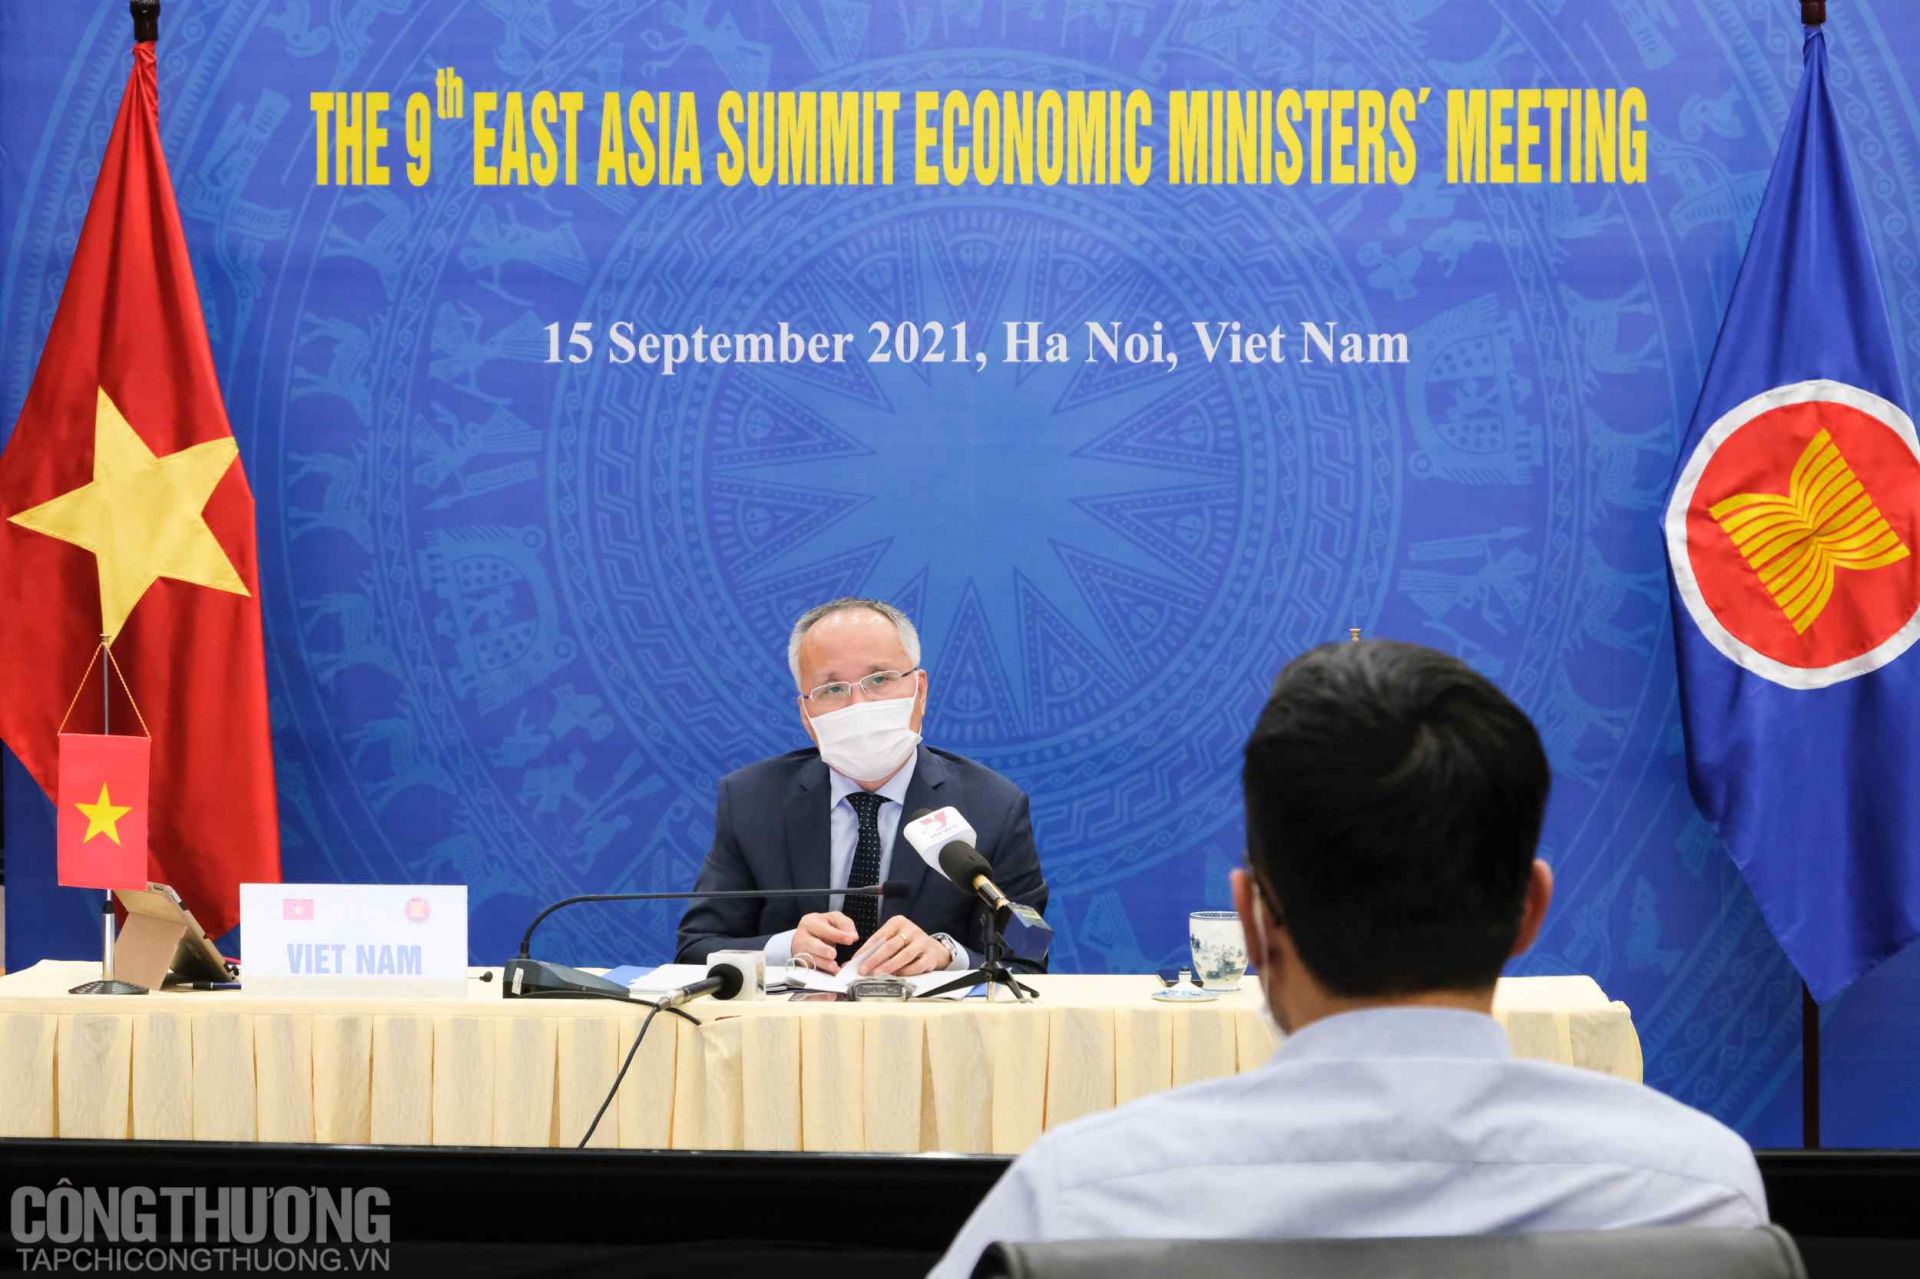 Thứ trưởng Bộ Công Thương Trần Quốc Khánh trả lời báo chí về kết quả Hội nghị Bộ trưởng Kinh tế ASEAN lần thứ 53 và các Hội nghị liên quan